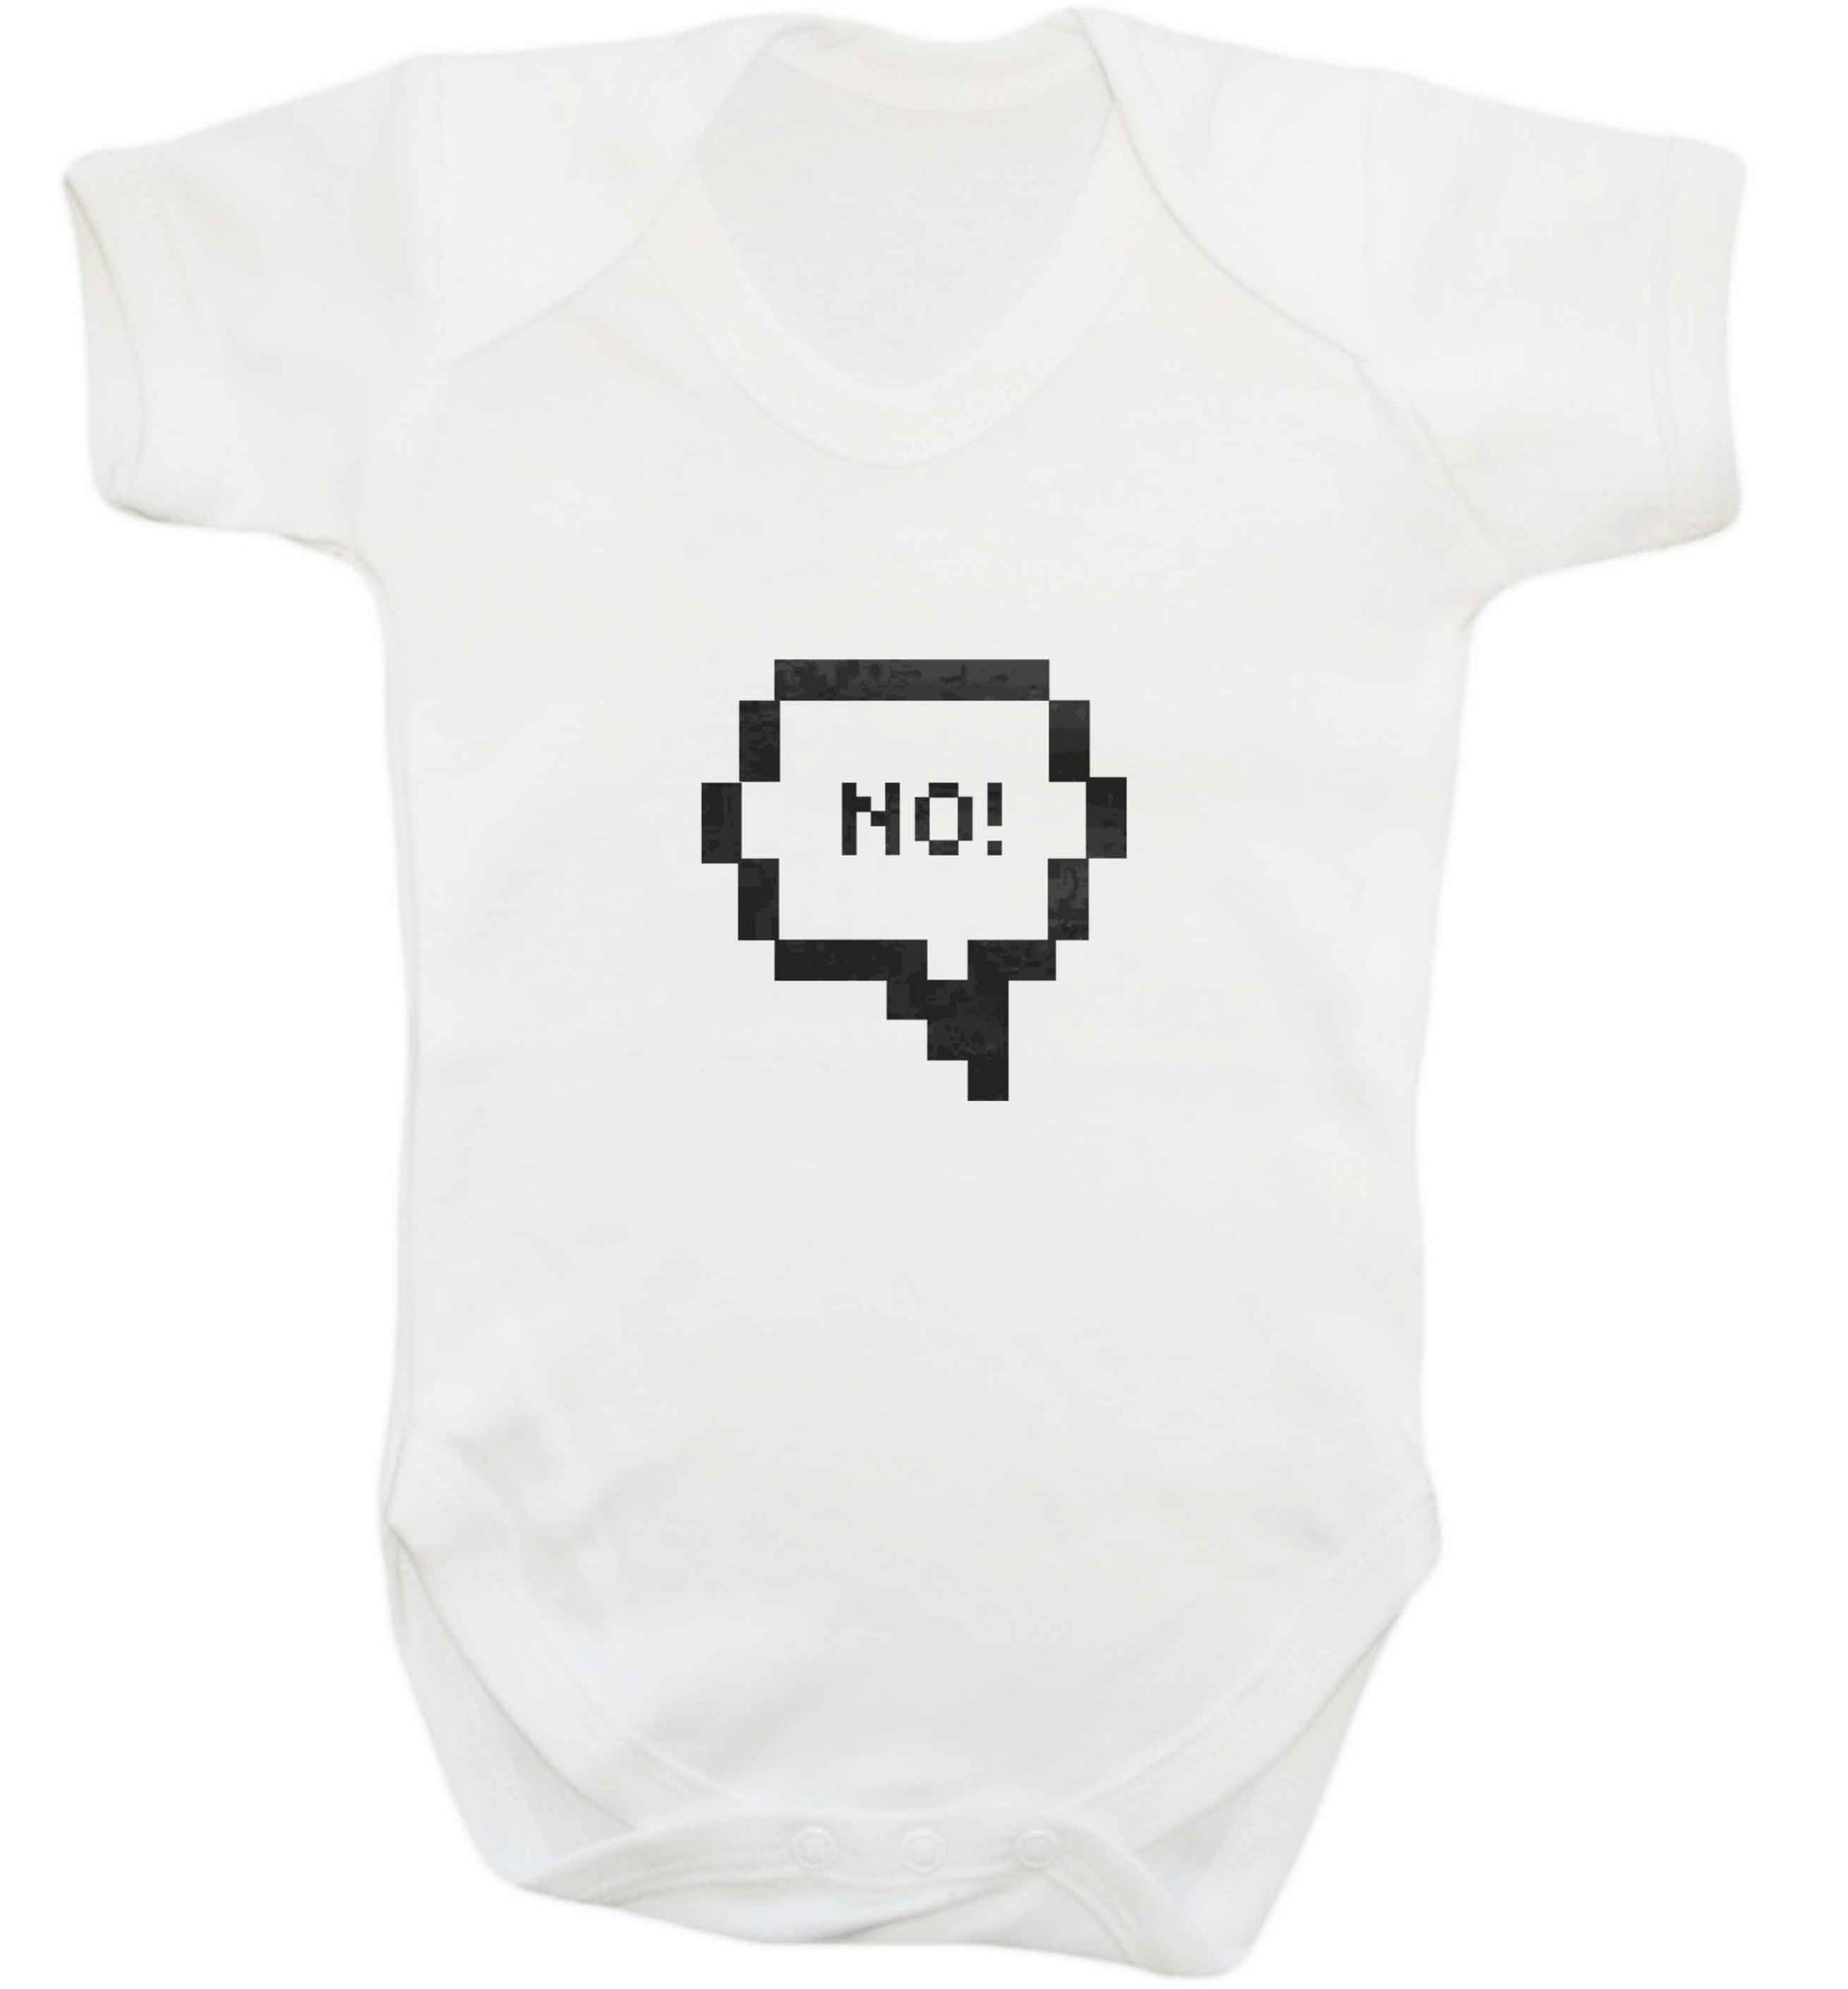 No baby vest white 18-24 months